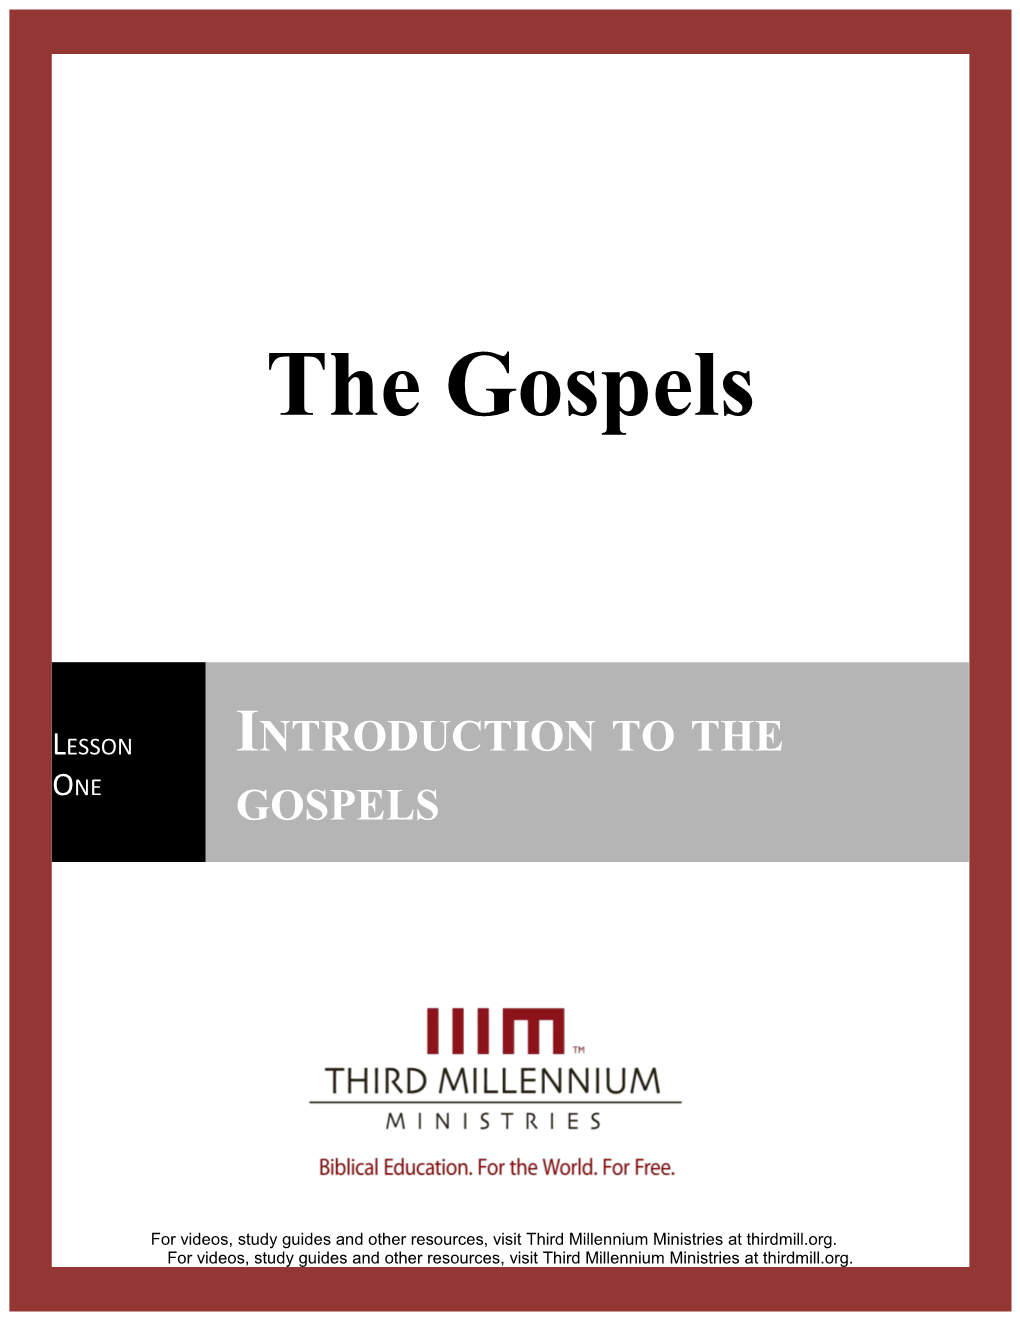 The Gospels, Lesson 1